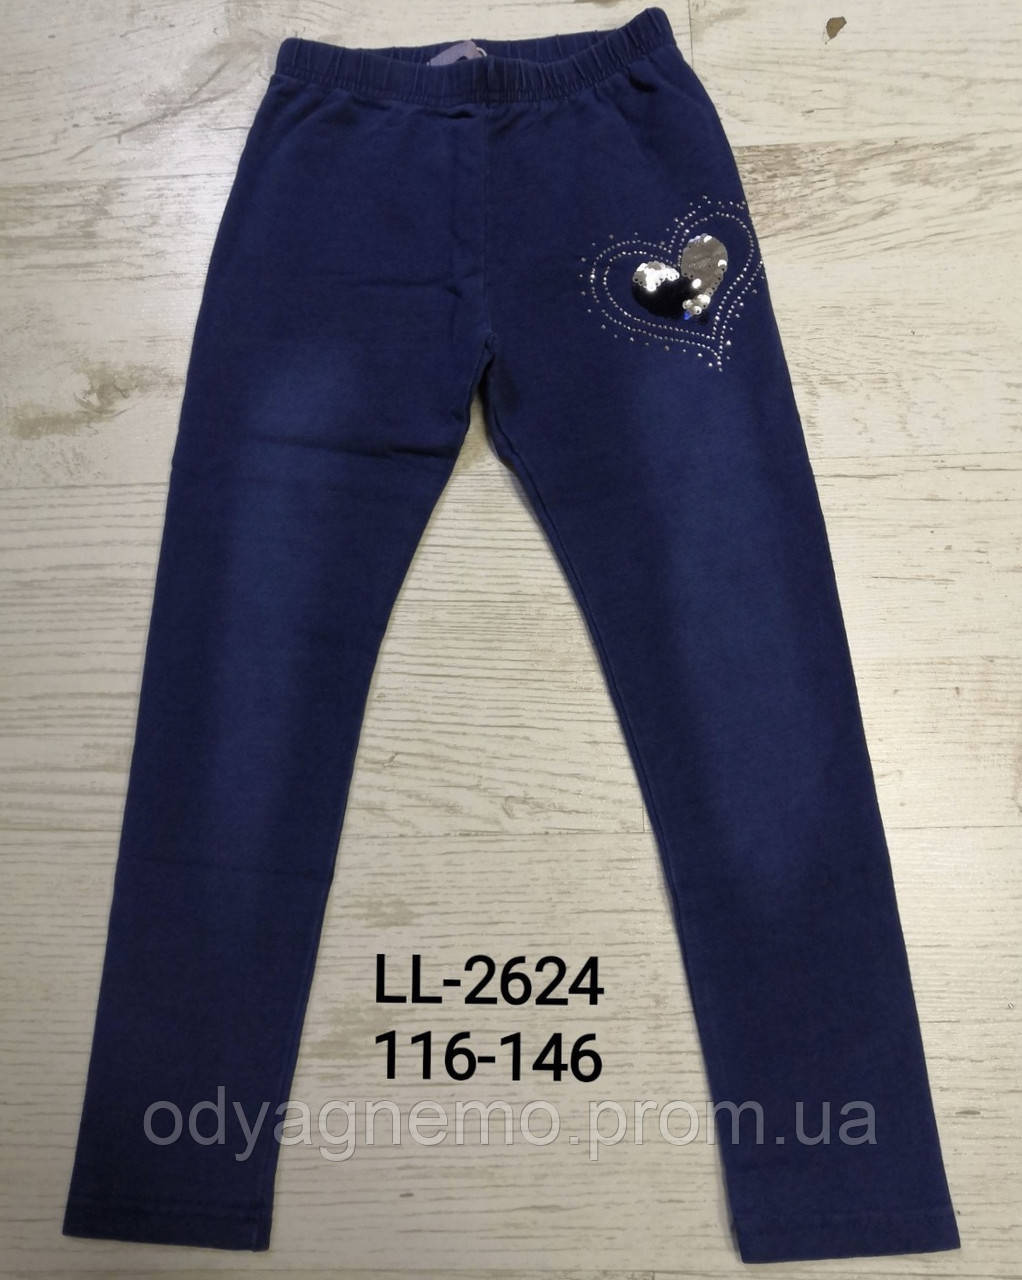 Лосини з імітацією джинси для дівчаток Sincere оптом, 116-146 pp. Артикул: LL2624